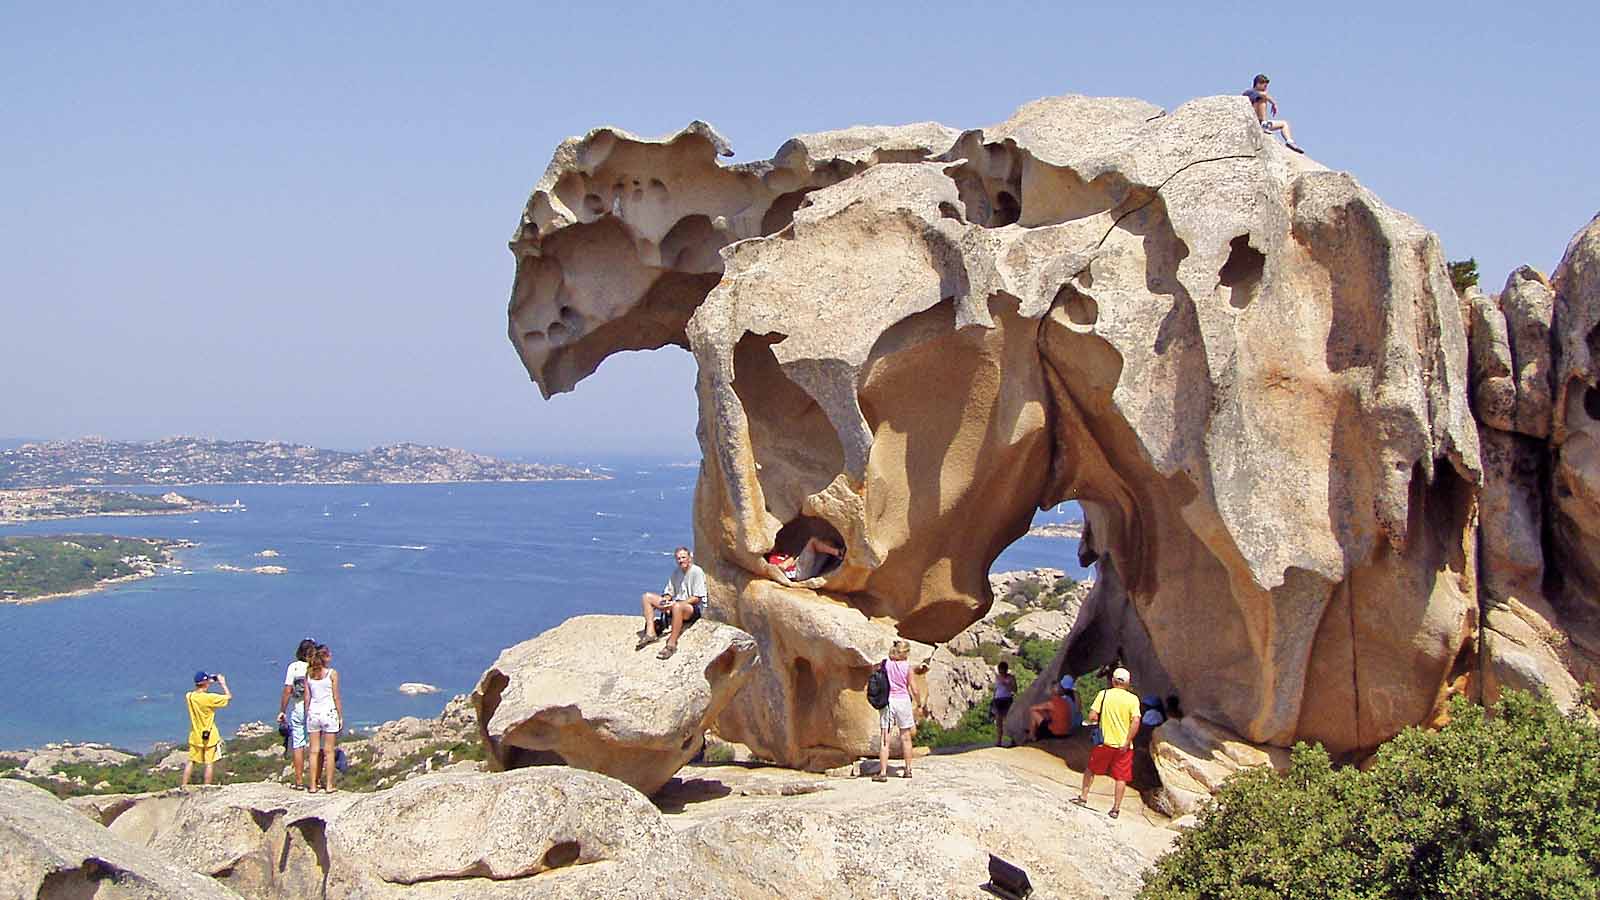 The Sardinian Stones